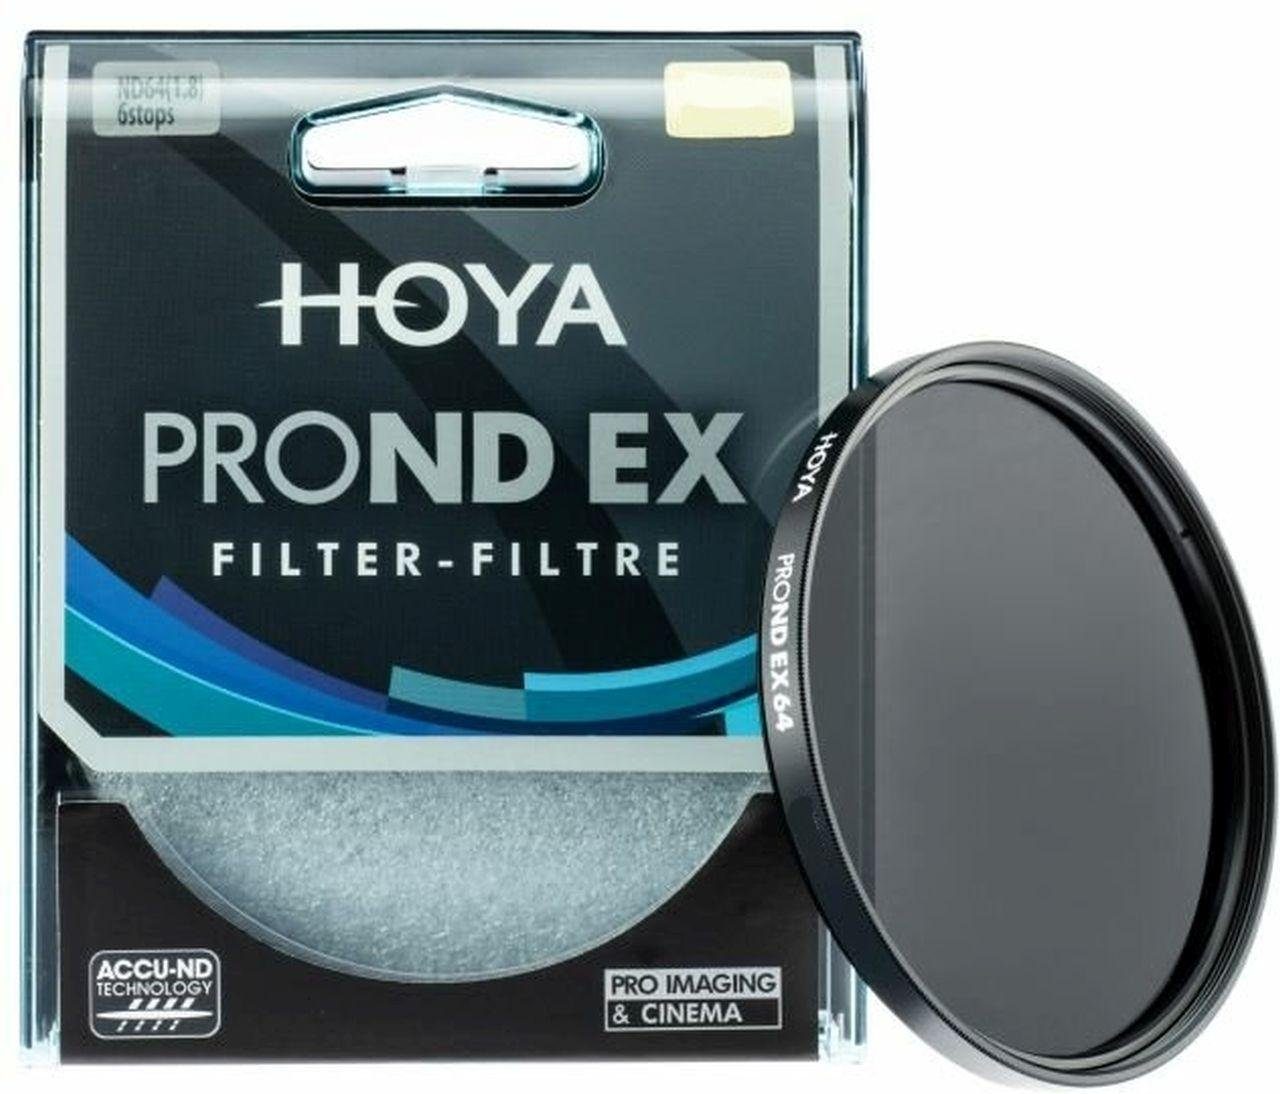 Hoya PROND EX Filter ND64 77mm Objektivzubehör